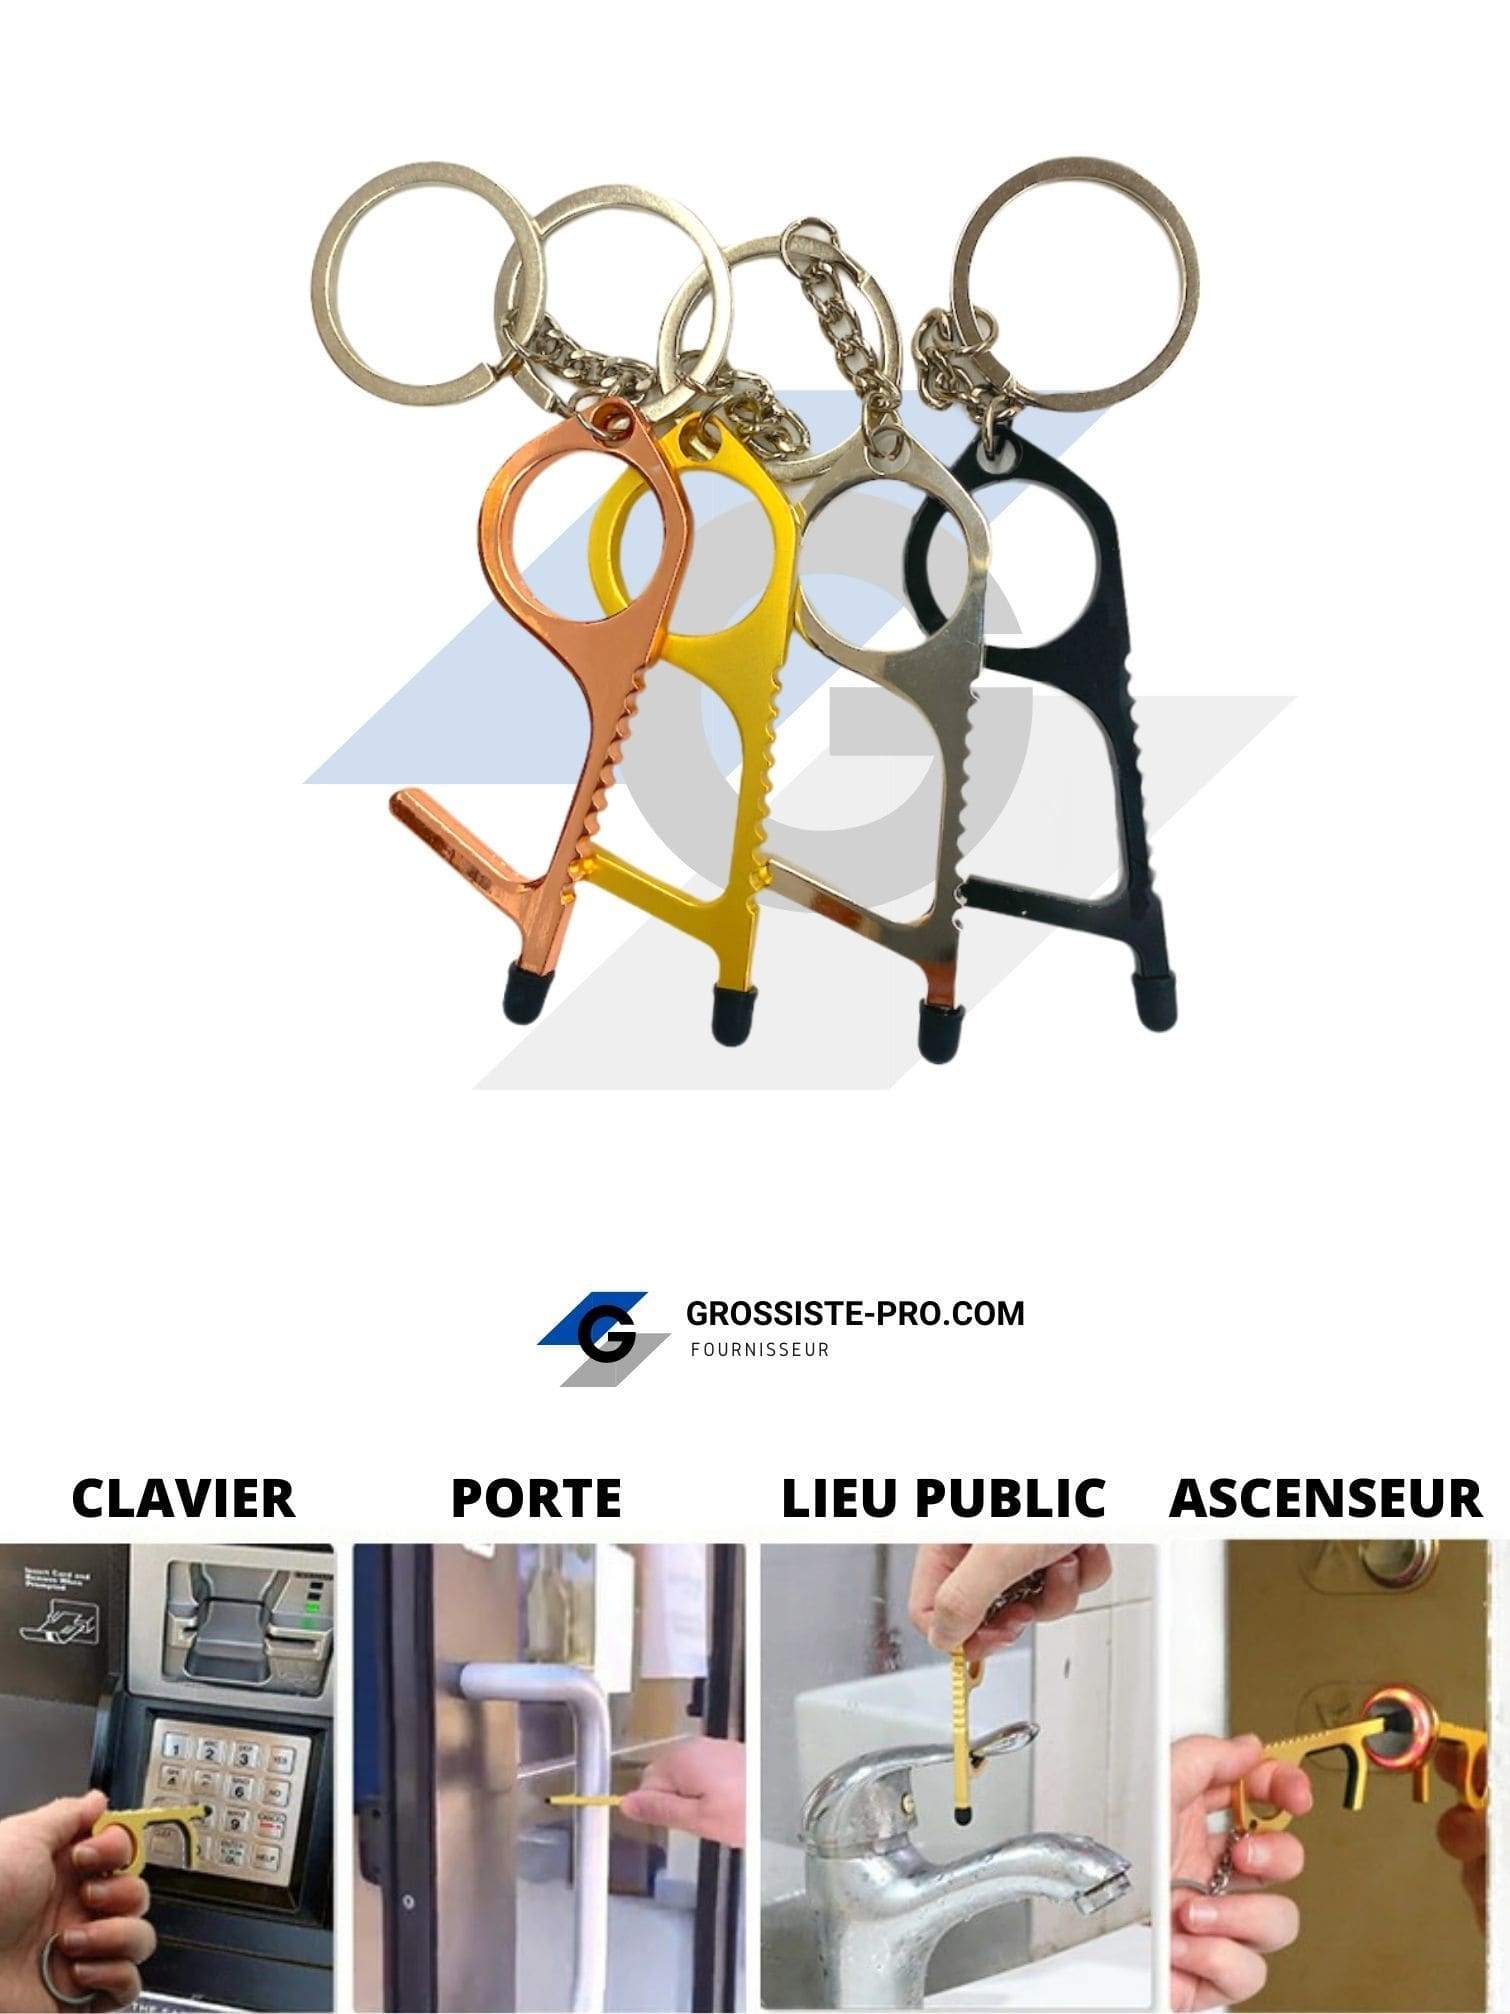 ANTI-COVID19 - Porte-clé "sans-contact" forme simple       (x12) 1,50€/unité | Grossiste-pro